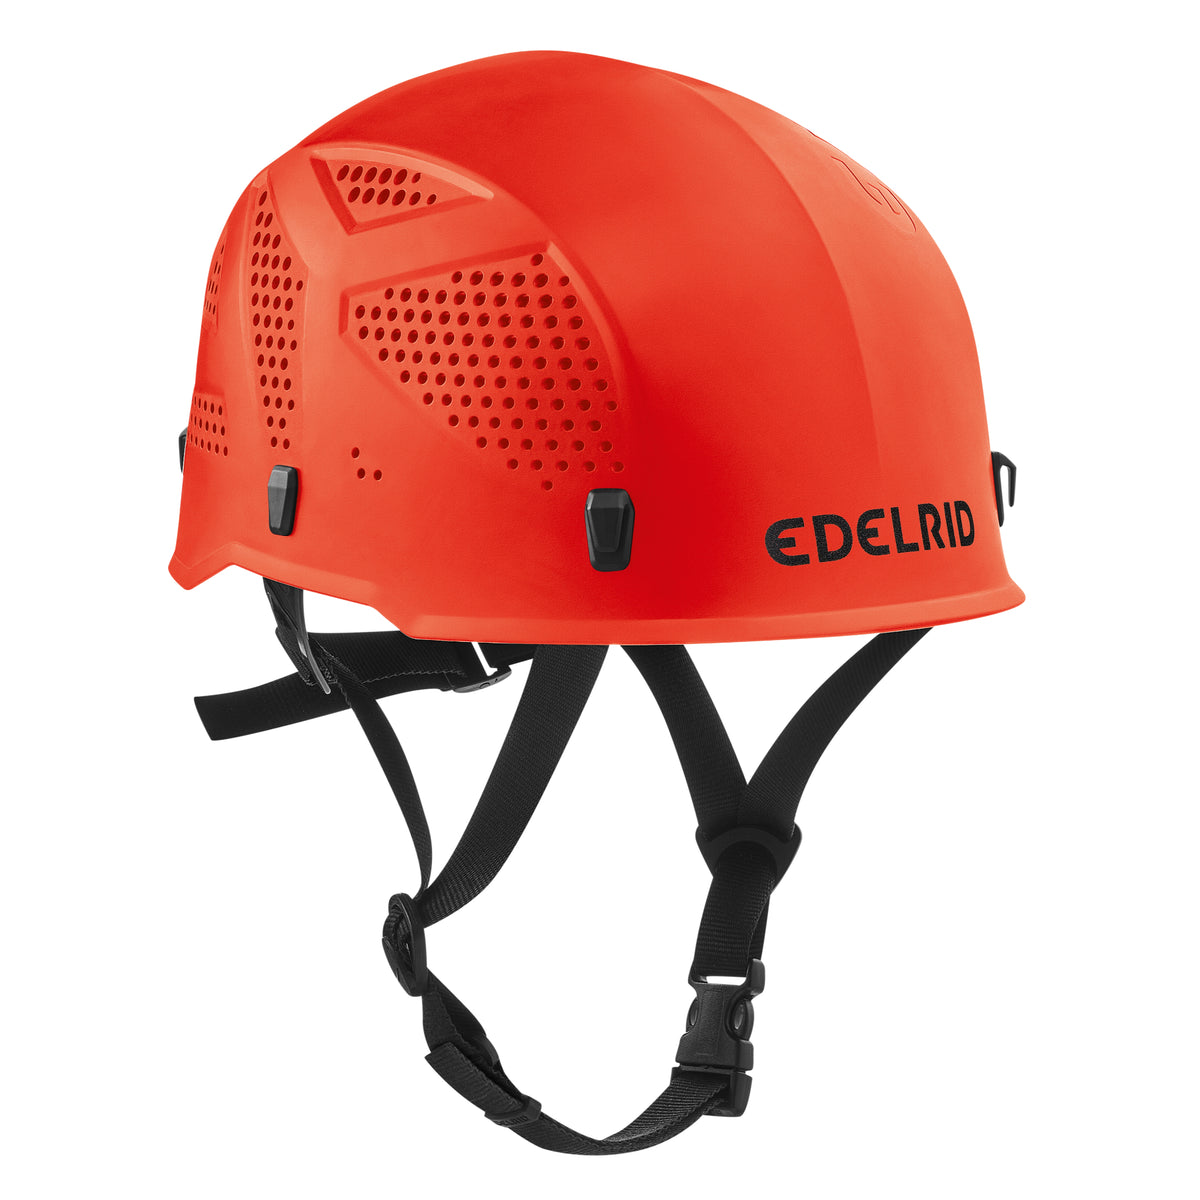 Edelrid Ultralight helmet in red colour